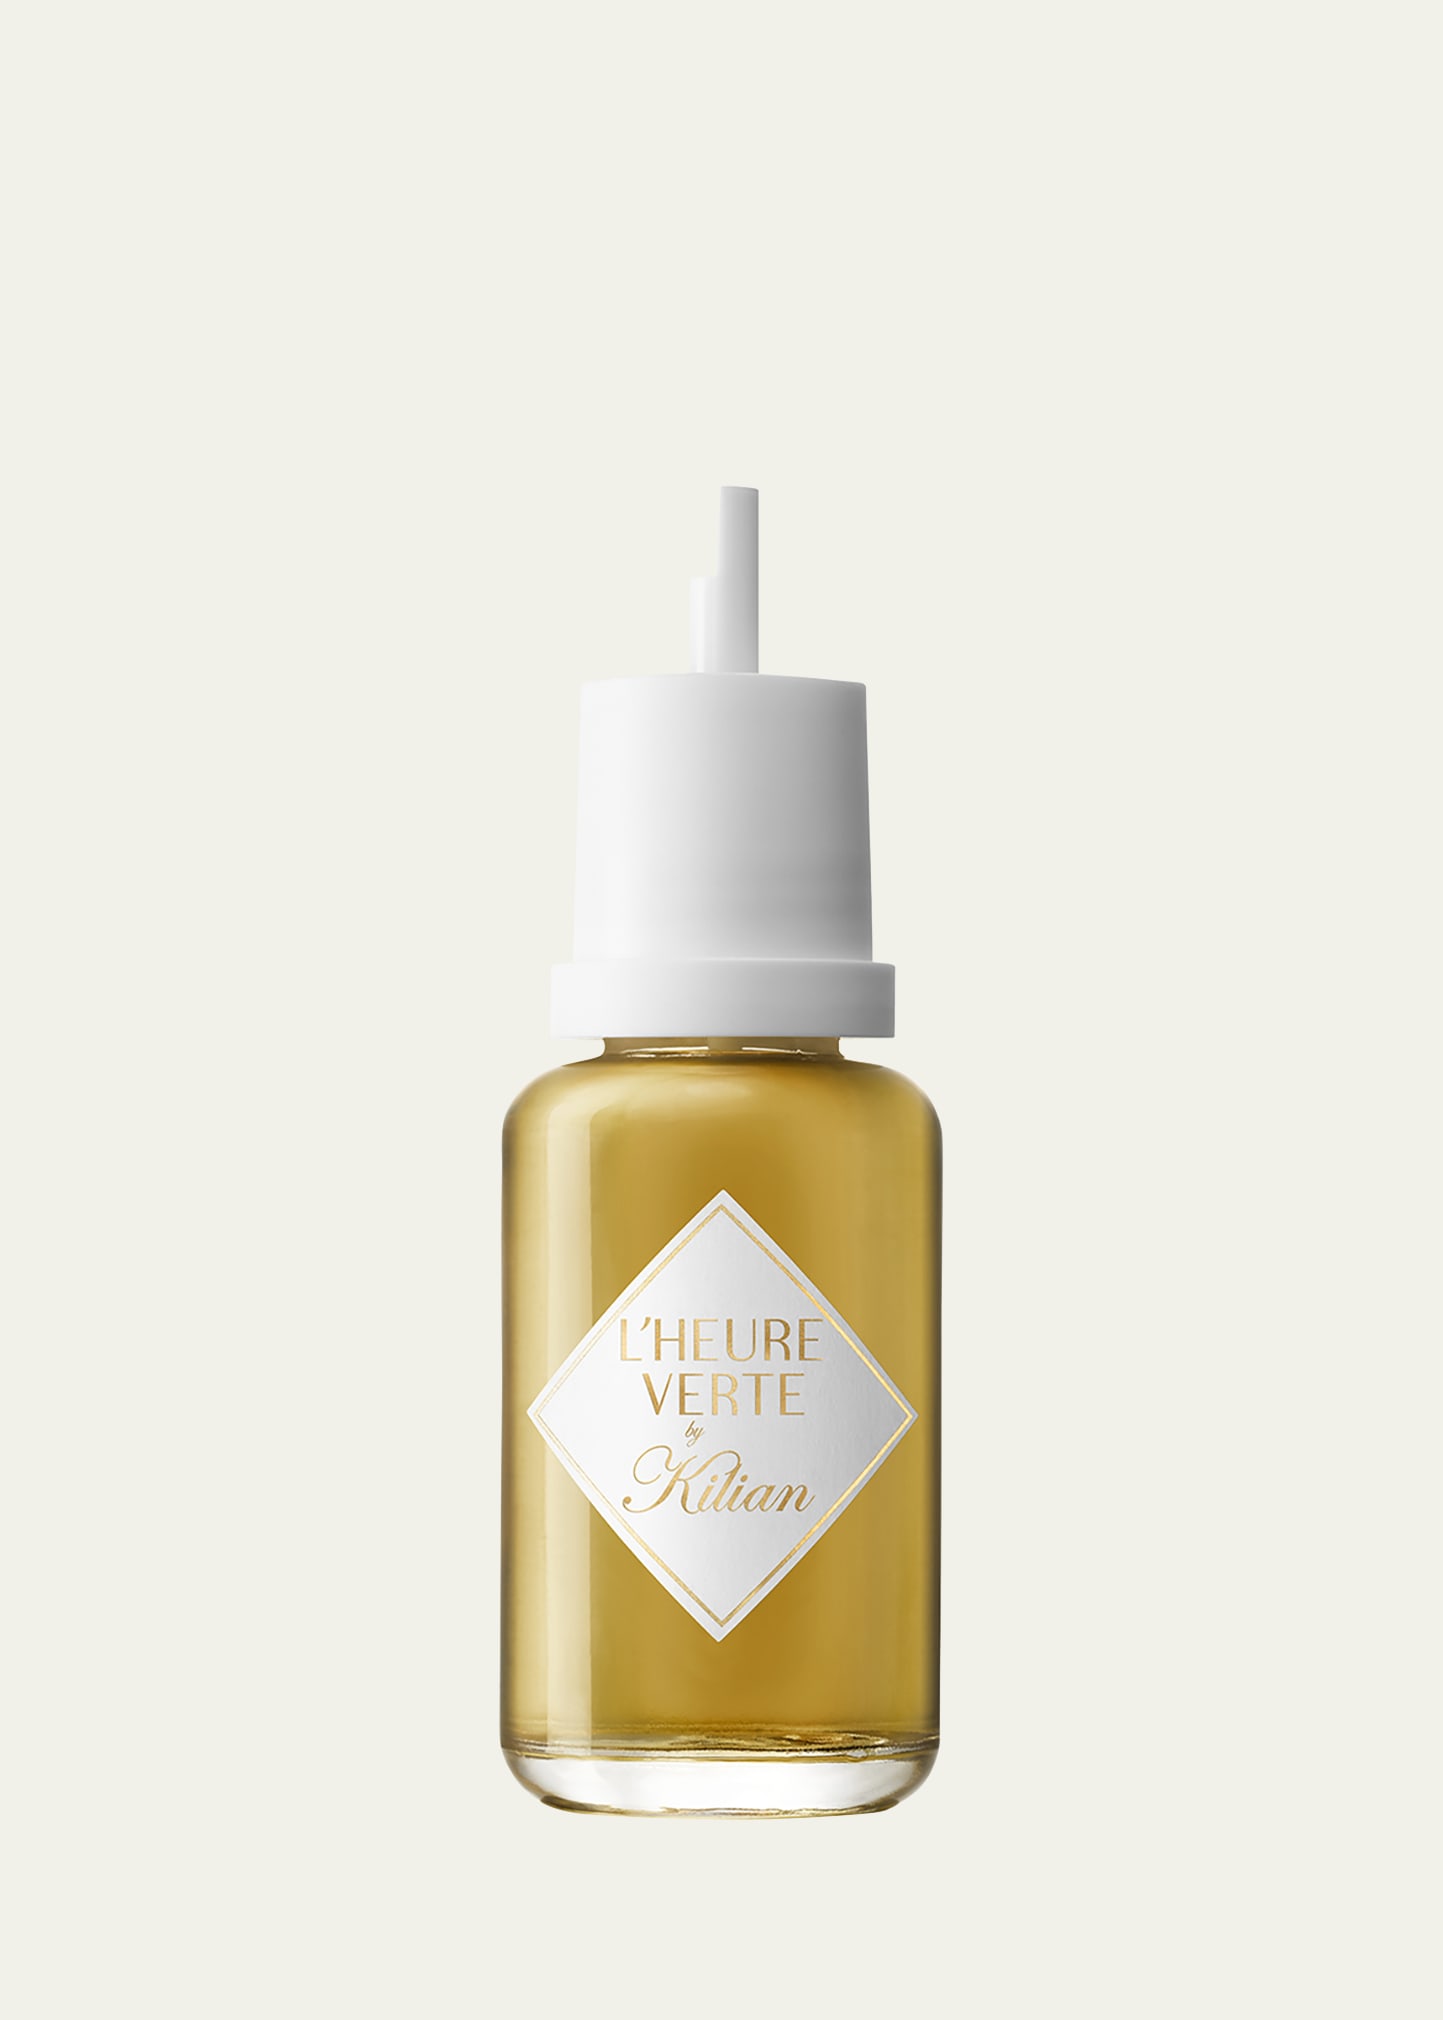 Kilian L'Heure Verte Eau de Parfum Refill, 1.7 oz.